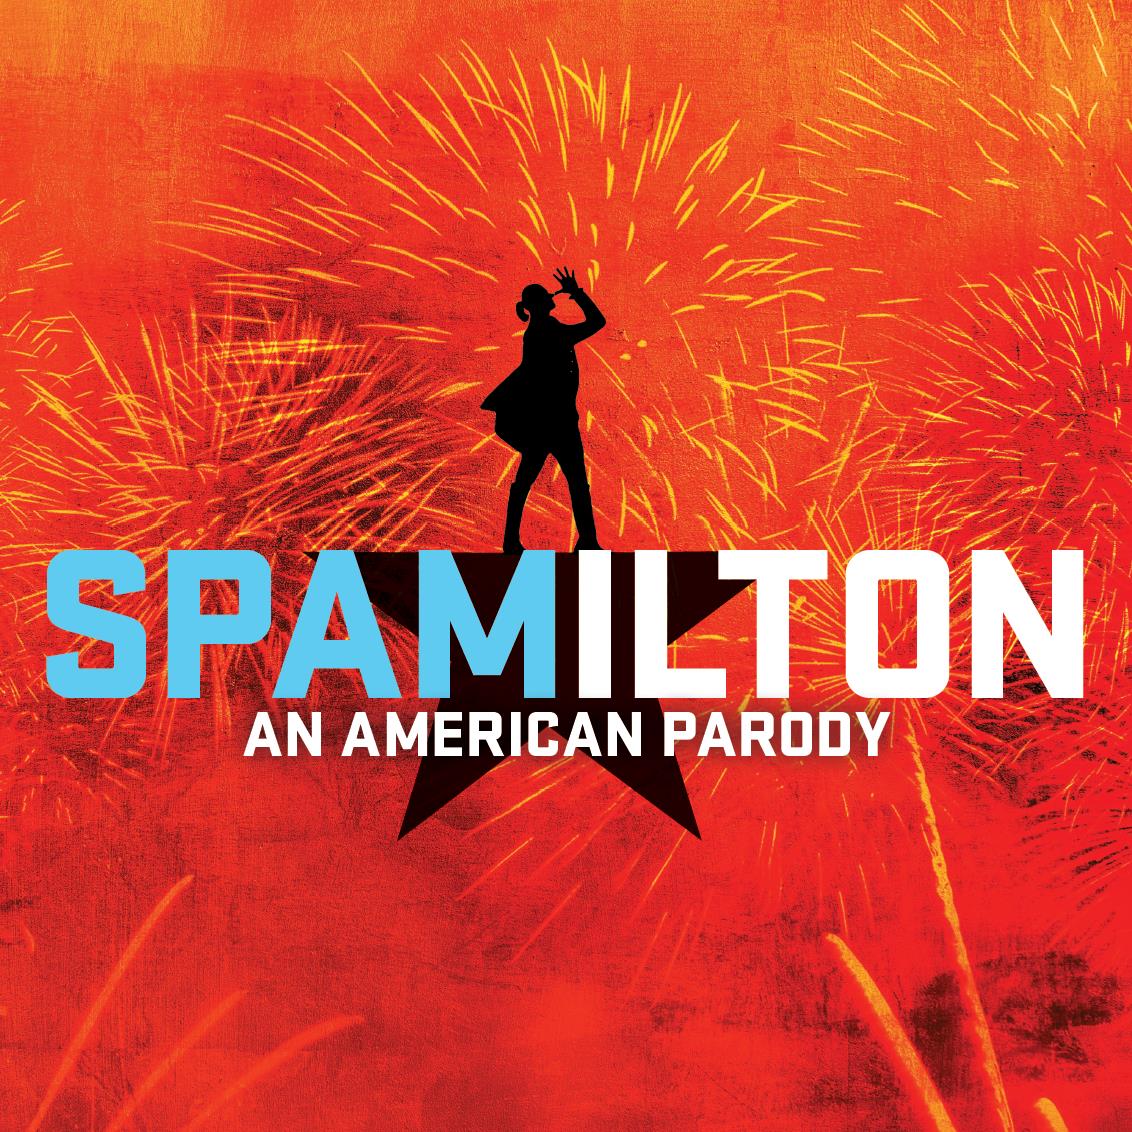 Spamilton - An American Parody the Musical logo